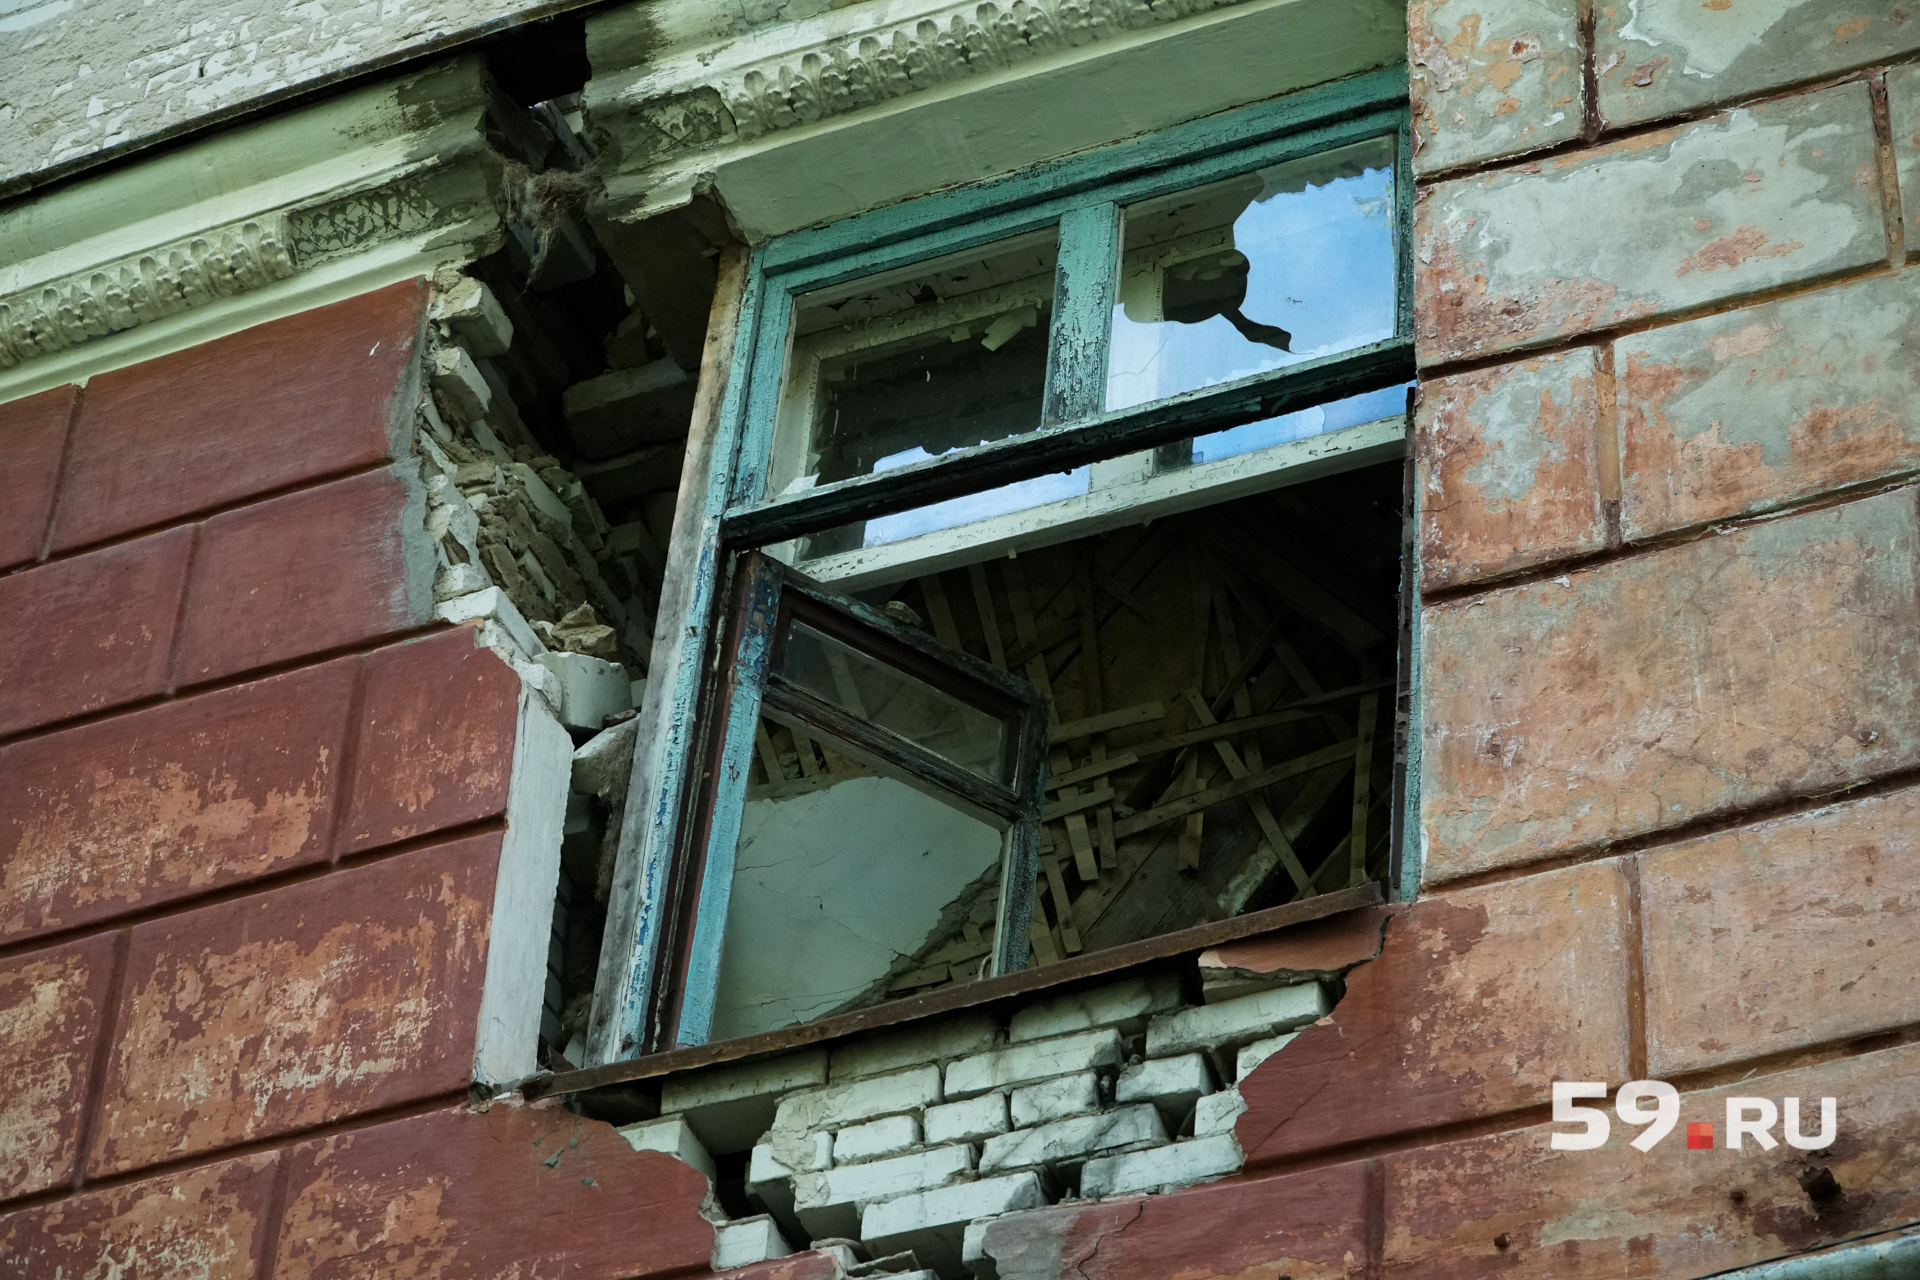 Через окна видно упавшие перекрытия